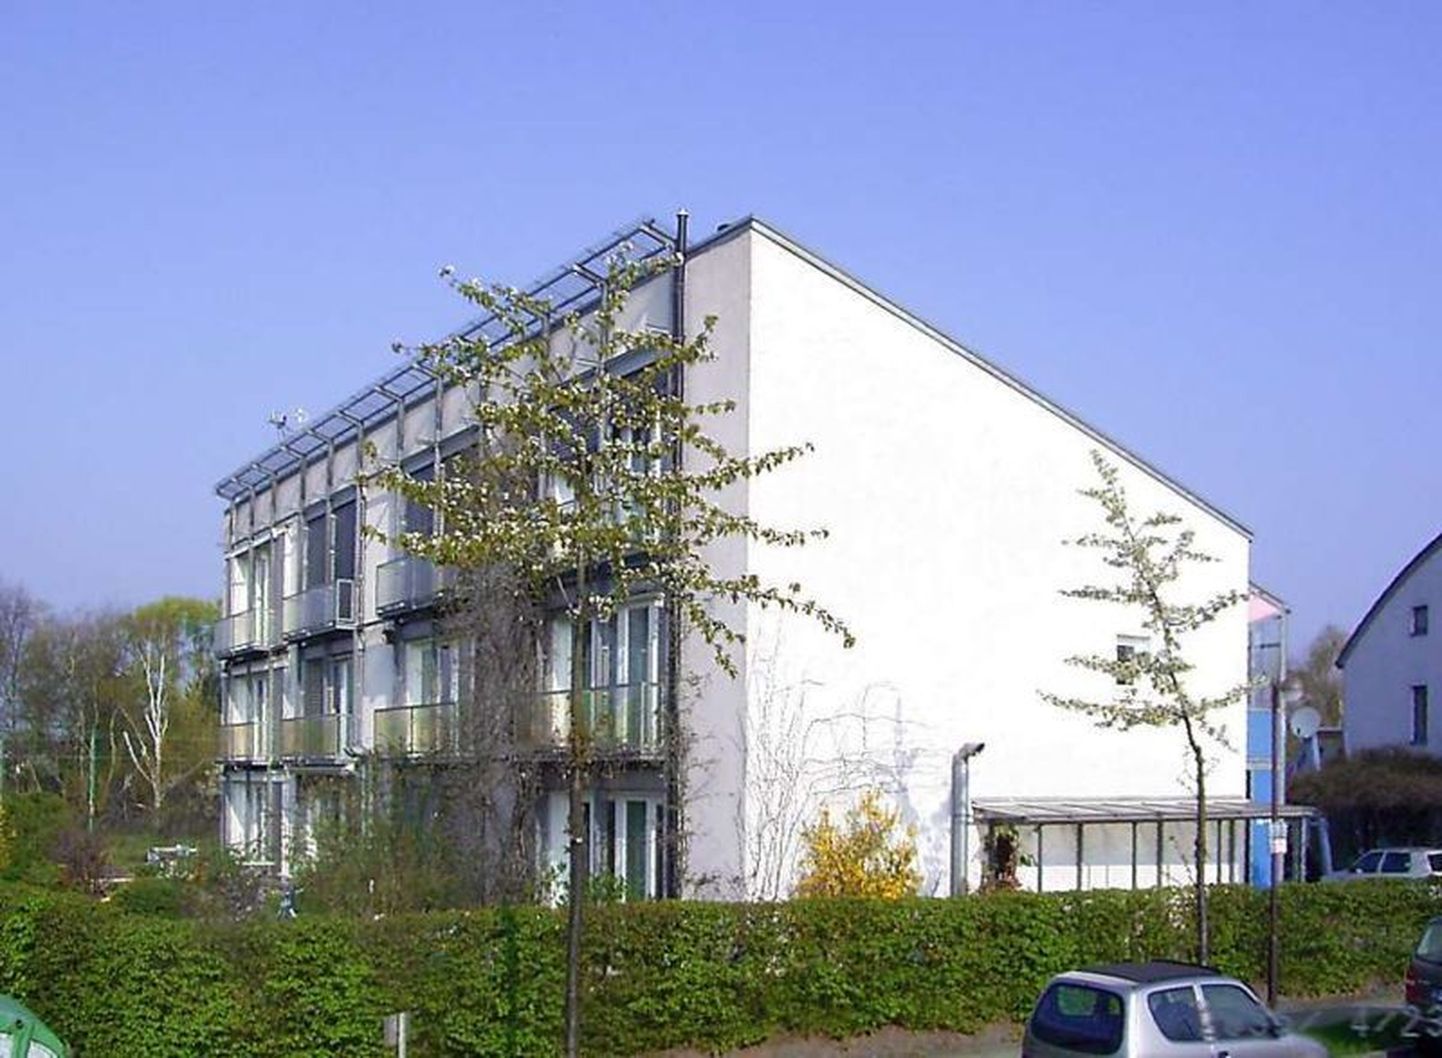 Maailma esimene passiivmaja ehitati 1990. aastal Saksamaal Darmstadtis.